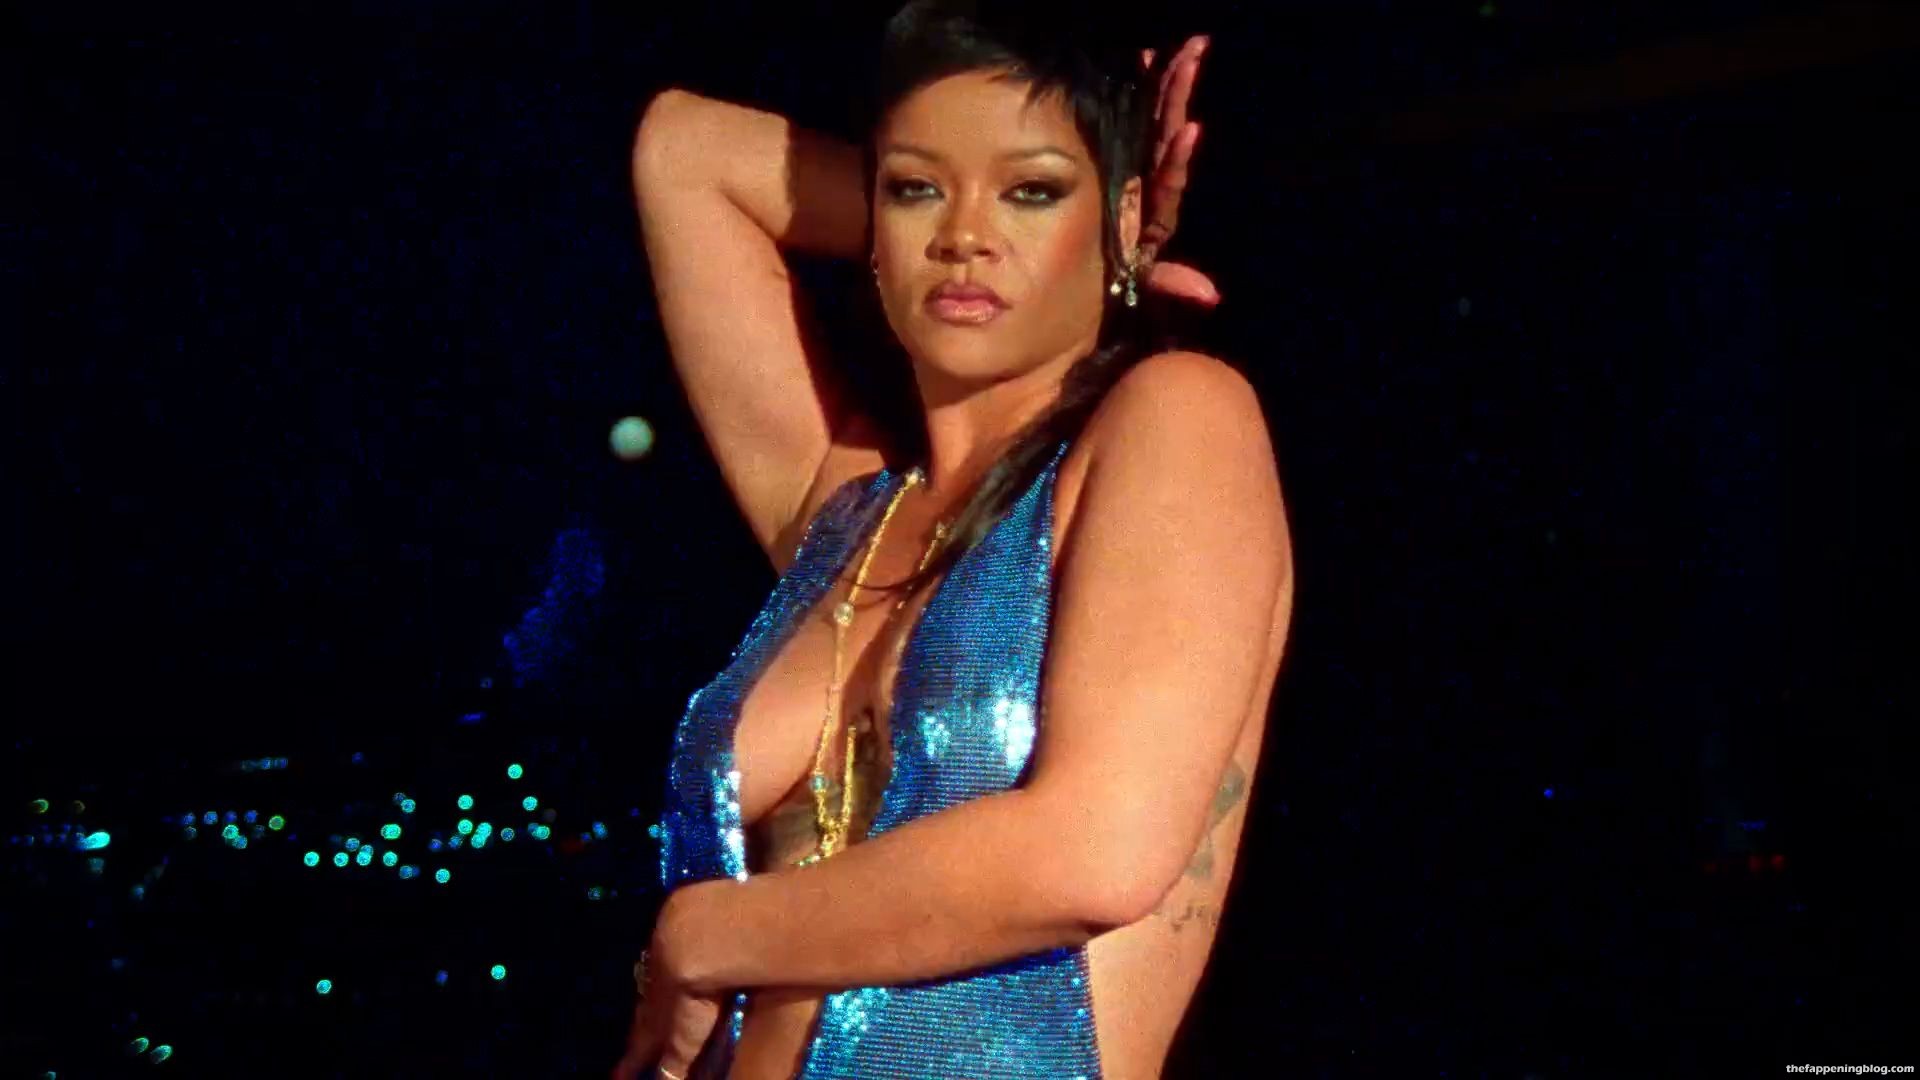 Rihanna-Boobs-Ass-31-thefappeningblog.com_.jpg